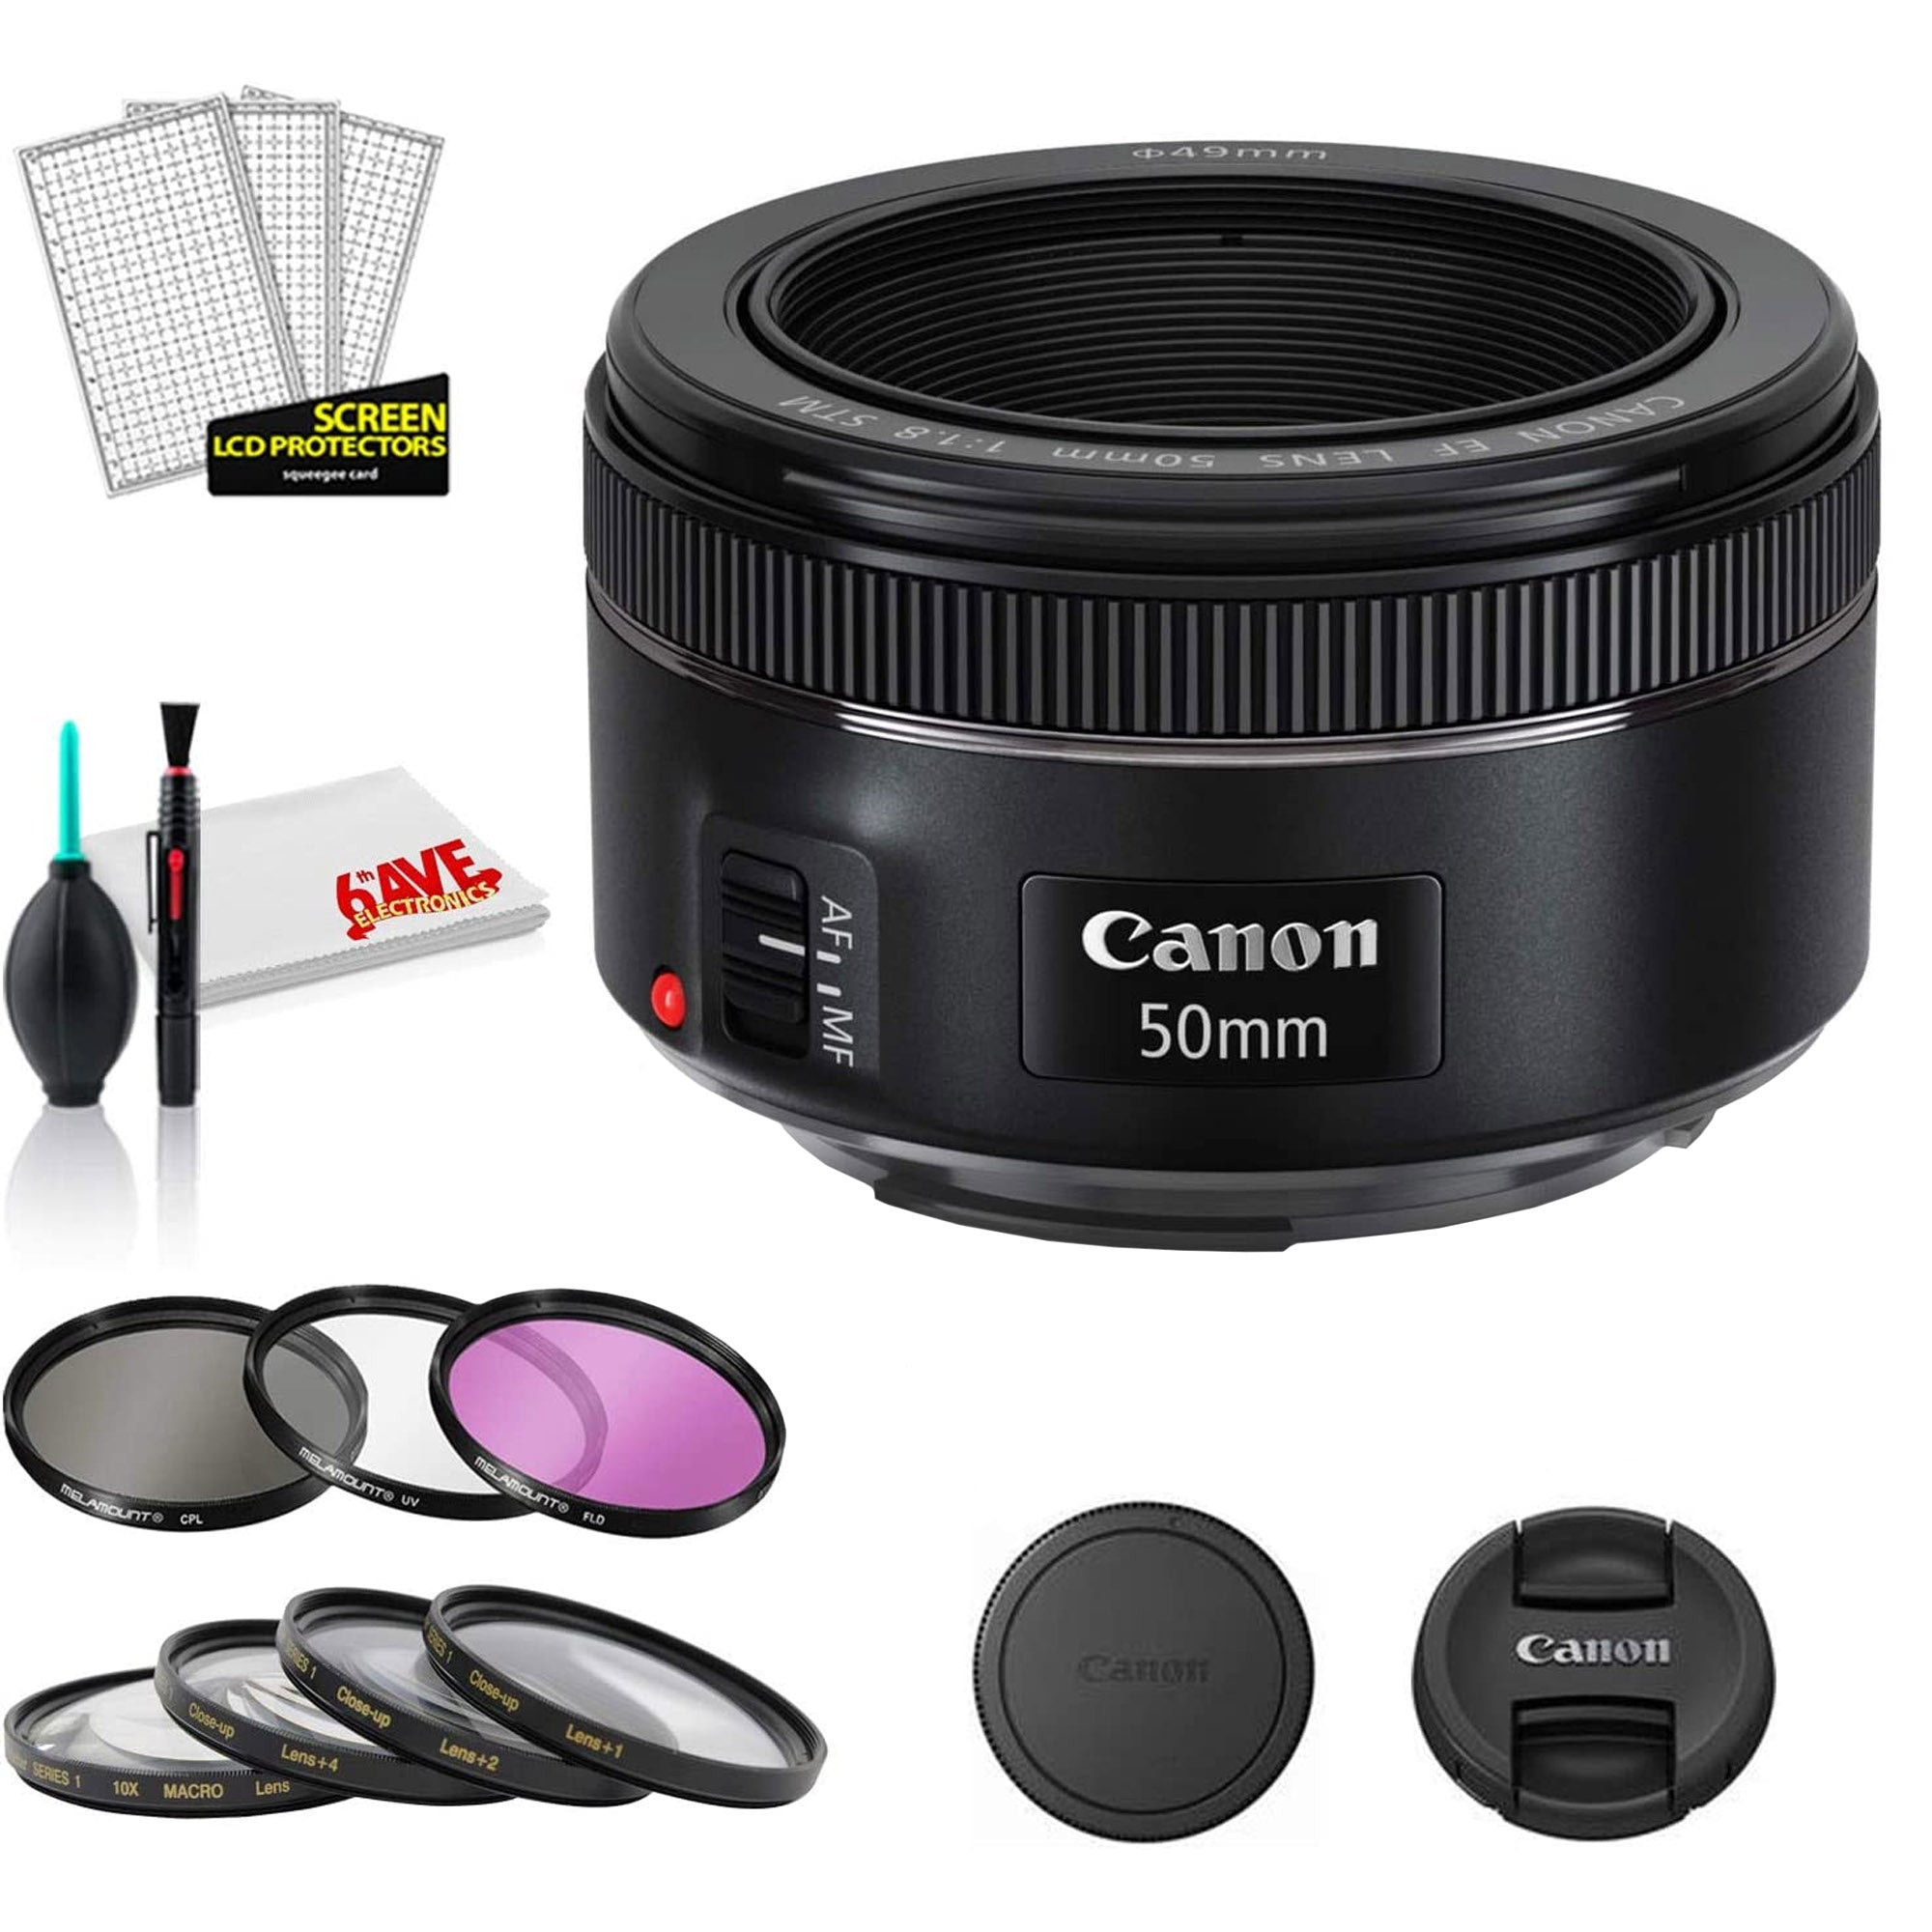 Canon EF 50mm f/1.8 STM Lens (International Model) Bundle with Filter Kits